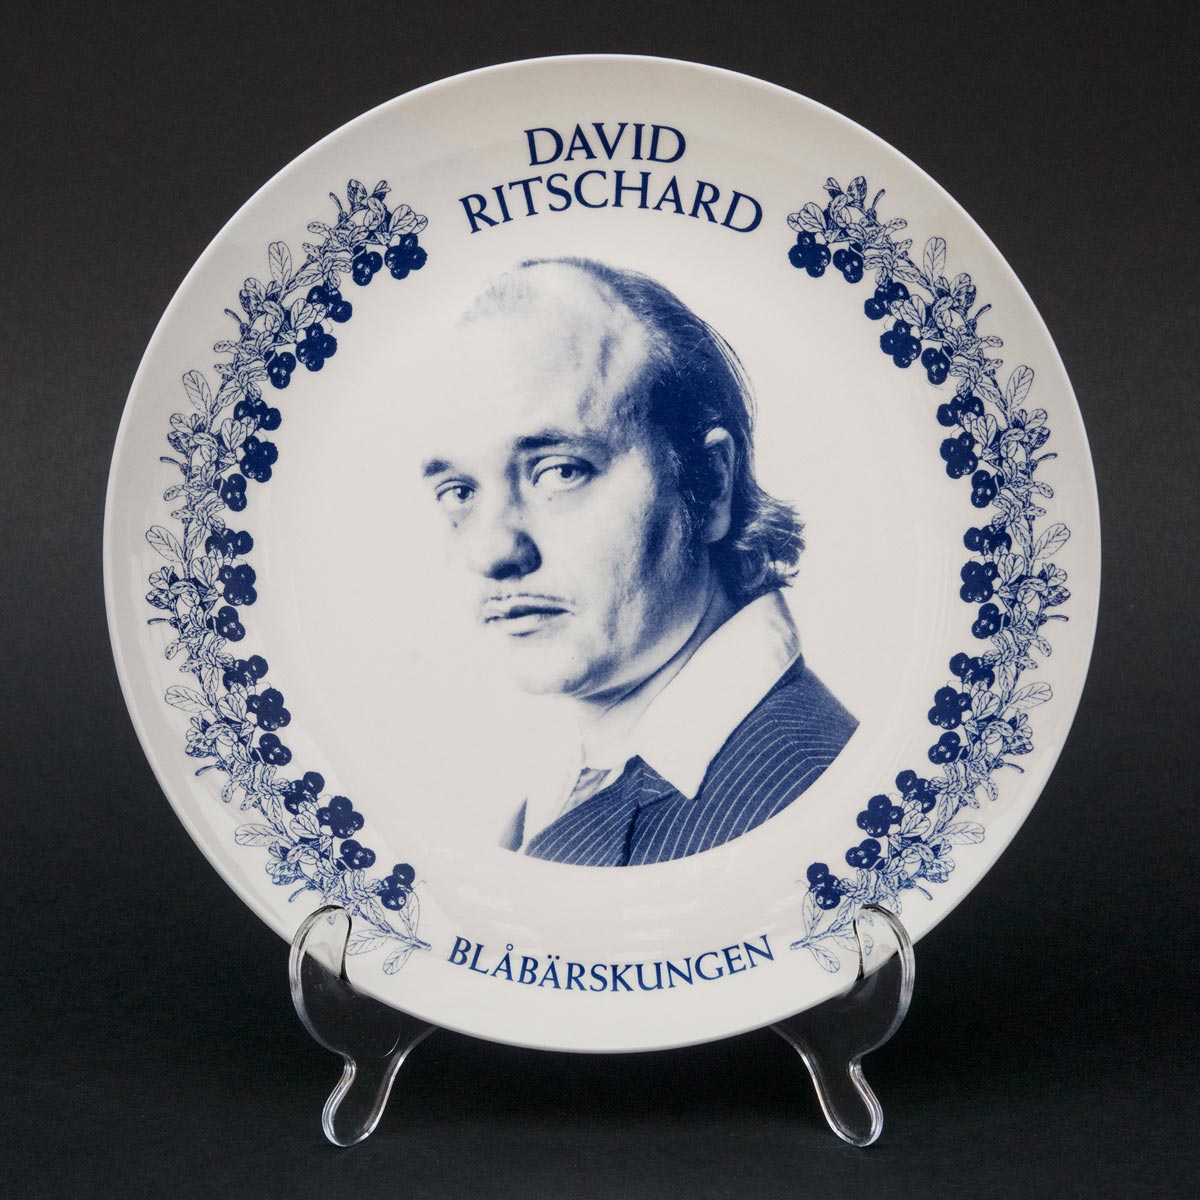 David Ritschard - Blåbärskungen - LP